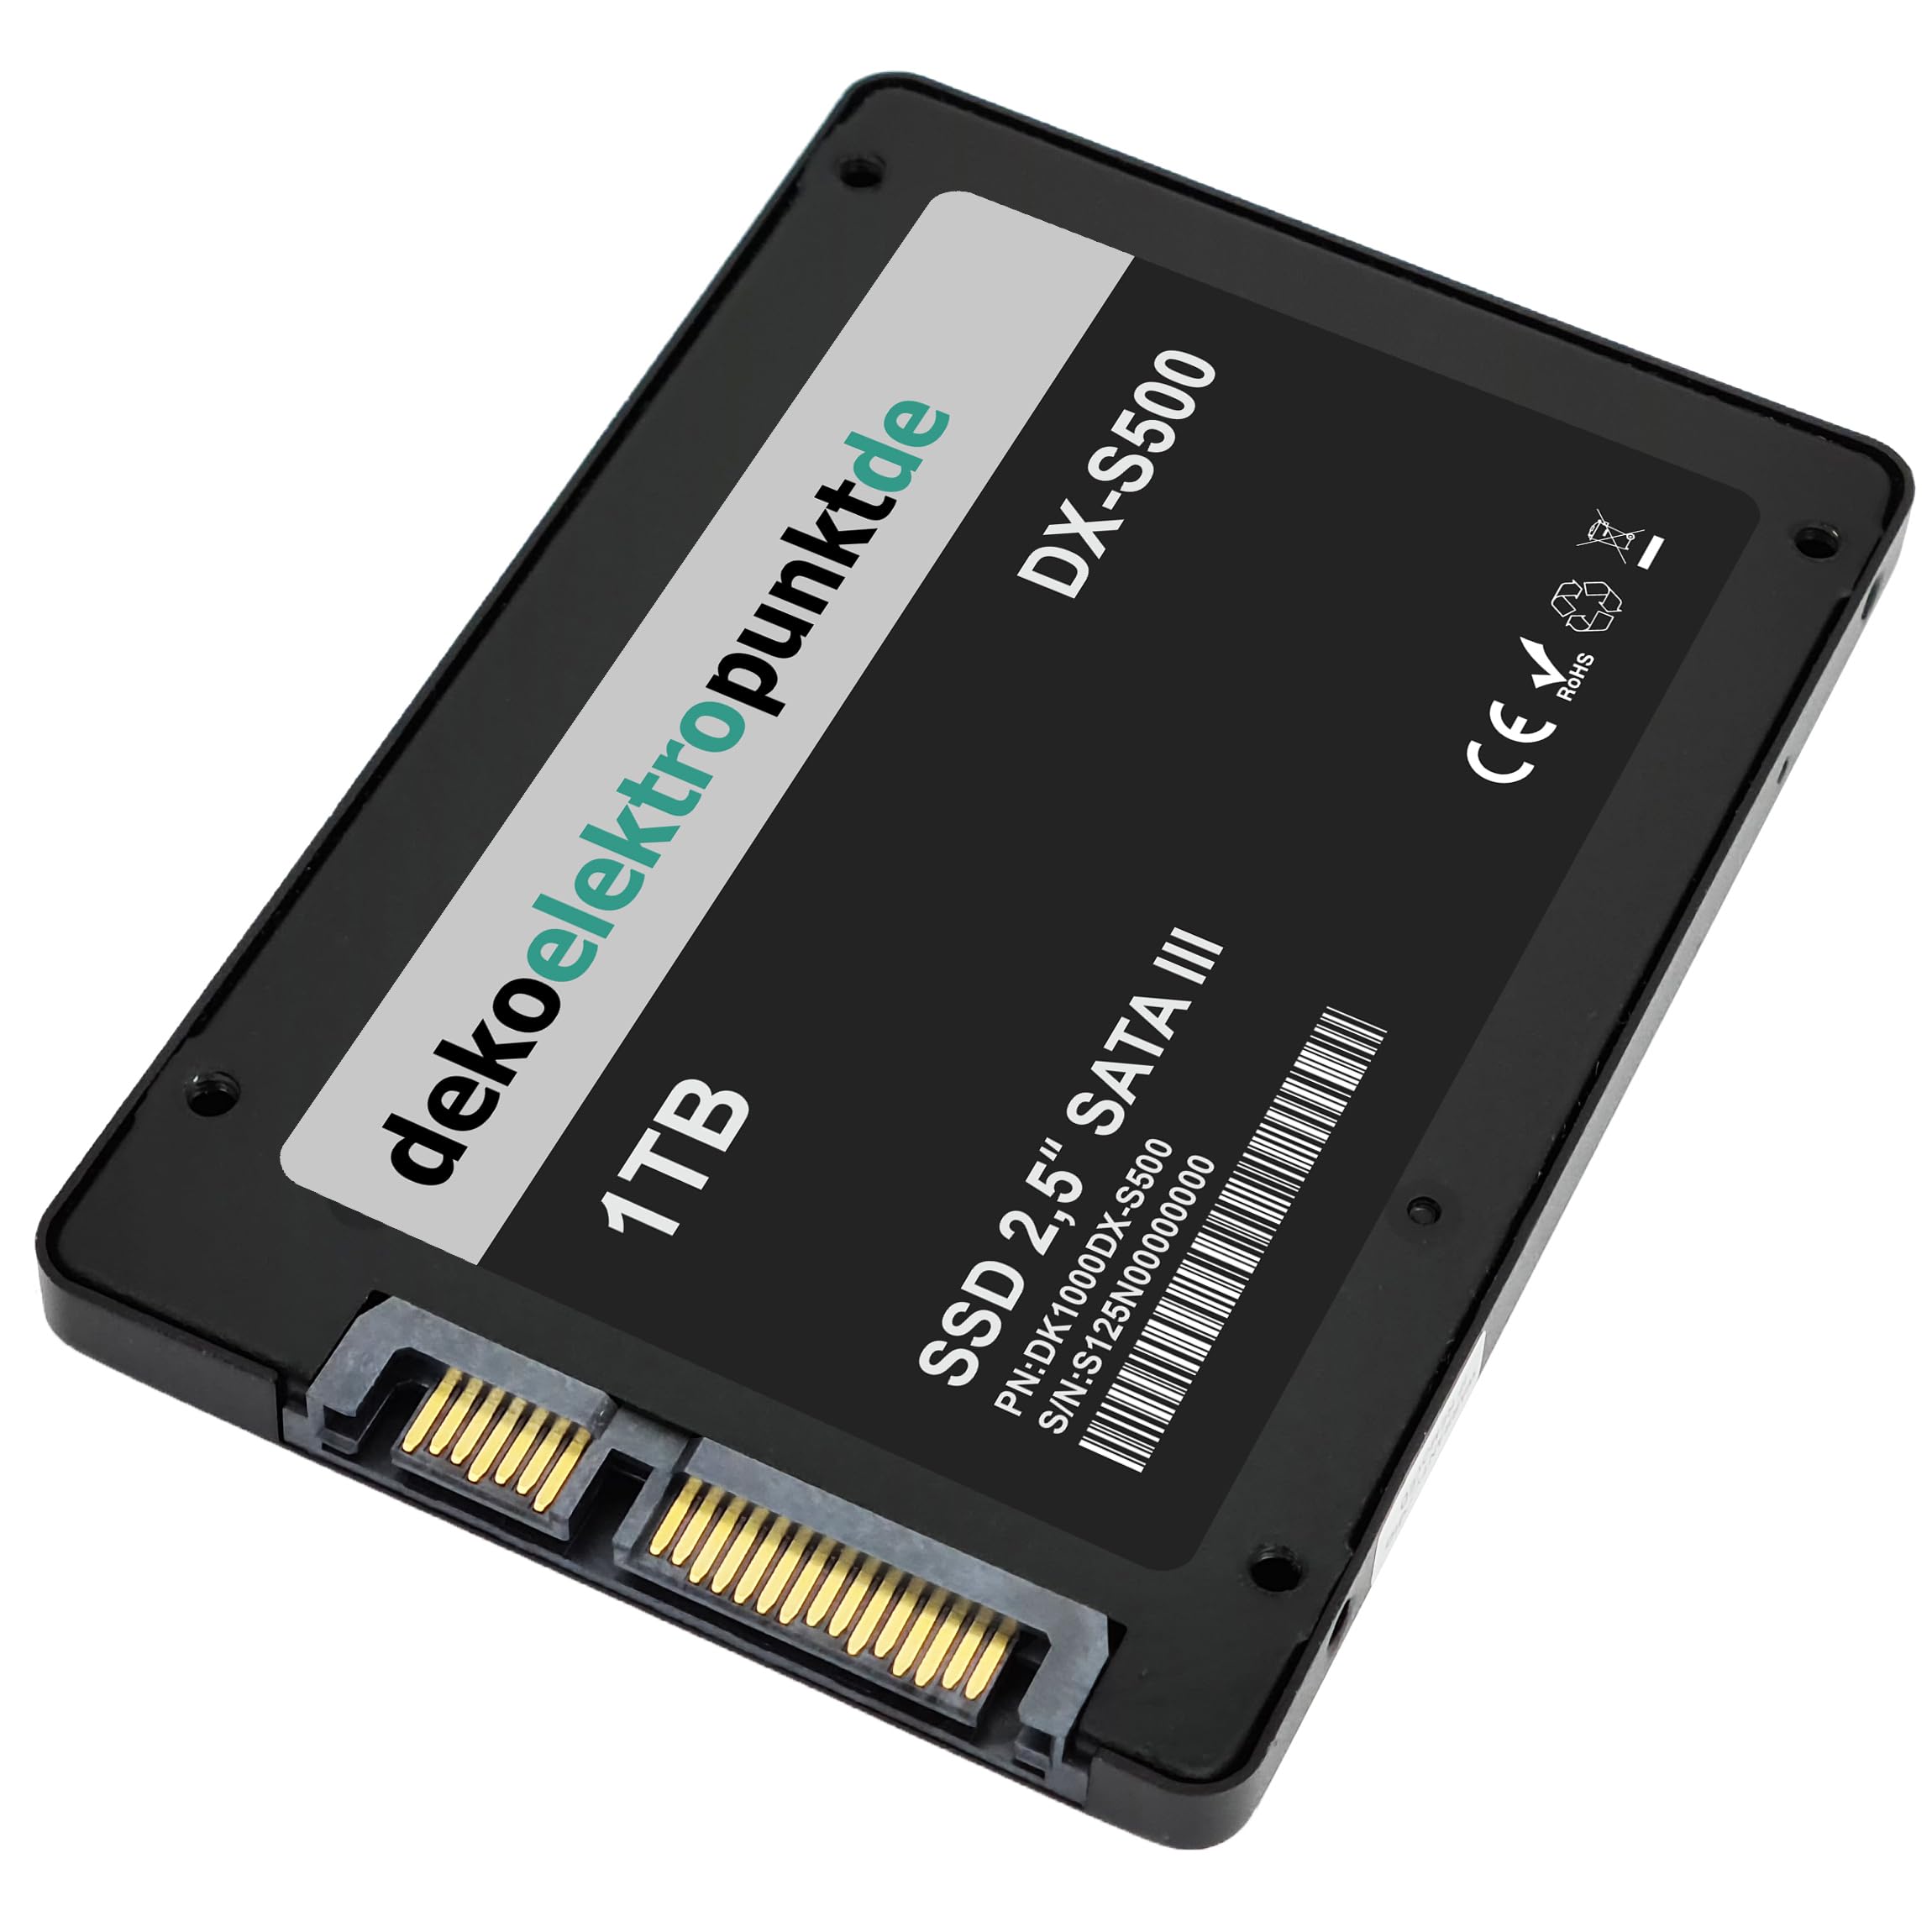 dekoelektropunktde 1TB SSD Festplatte passend für Samsung N120-anyNet N270 WBT, Alternatives Ersatzteil